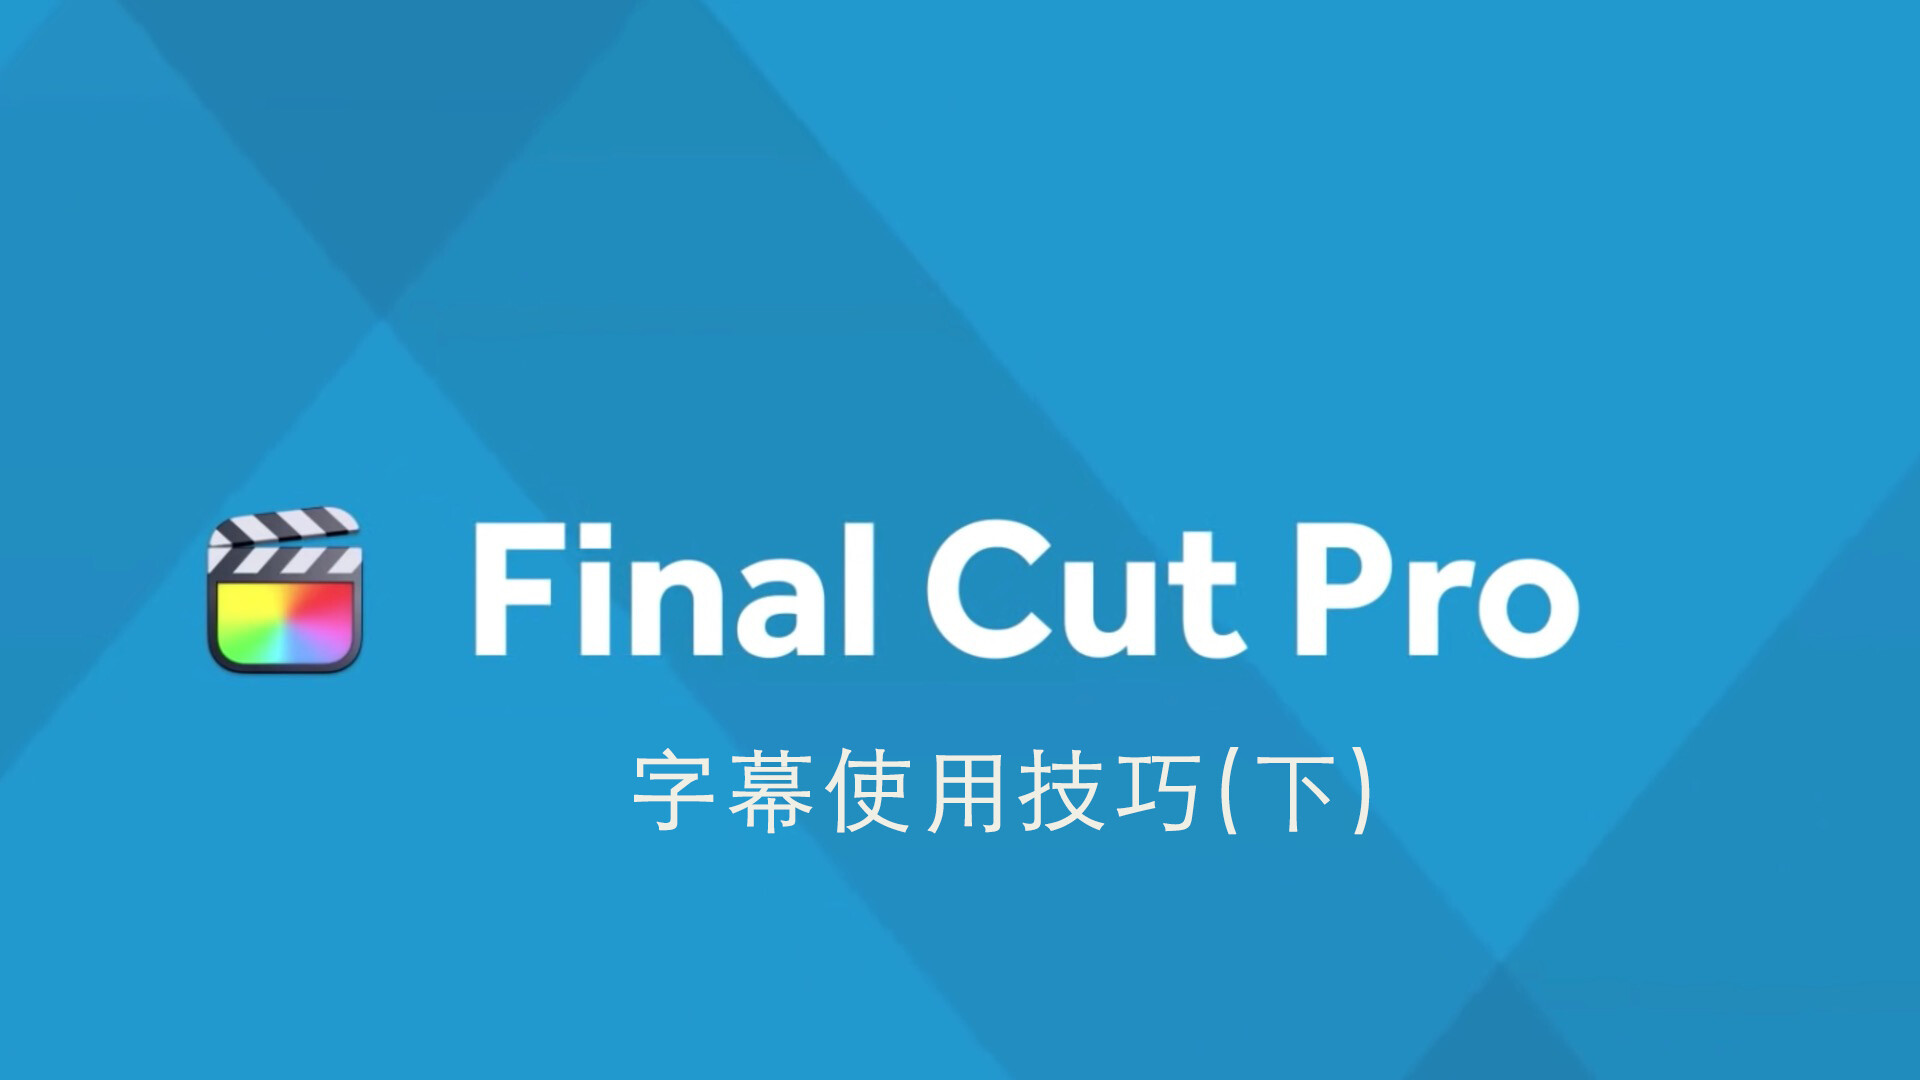 Final Cut Pro 中文基础教程(62)字幕技巧「下」